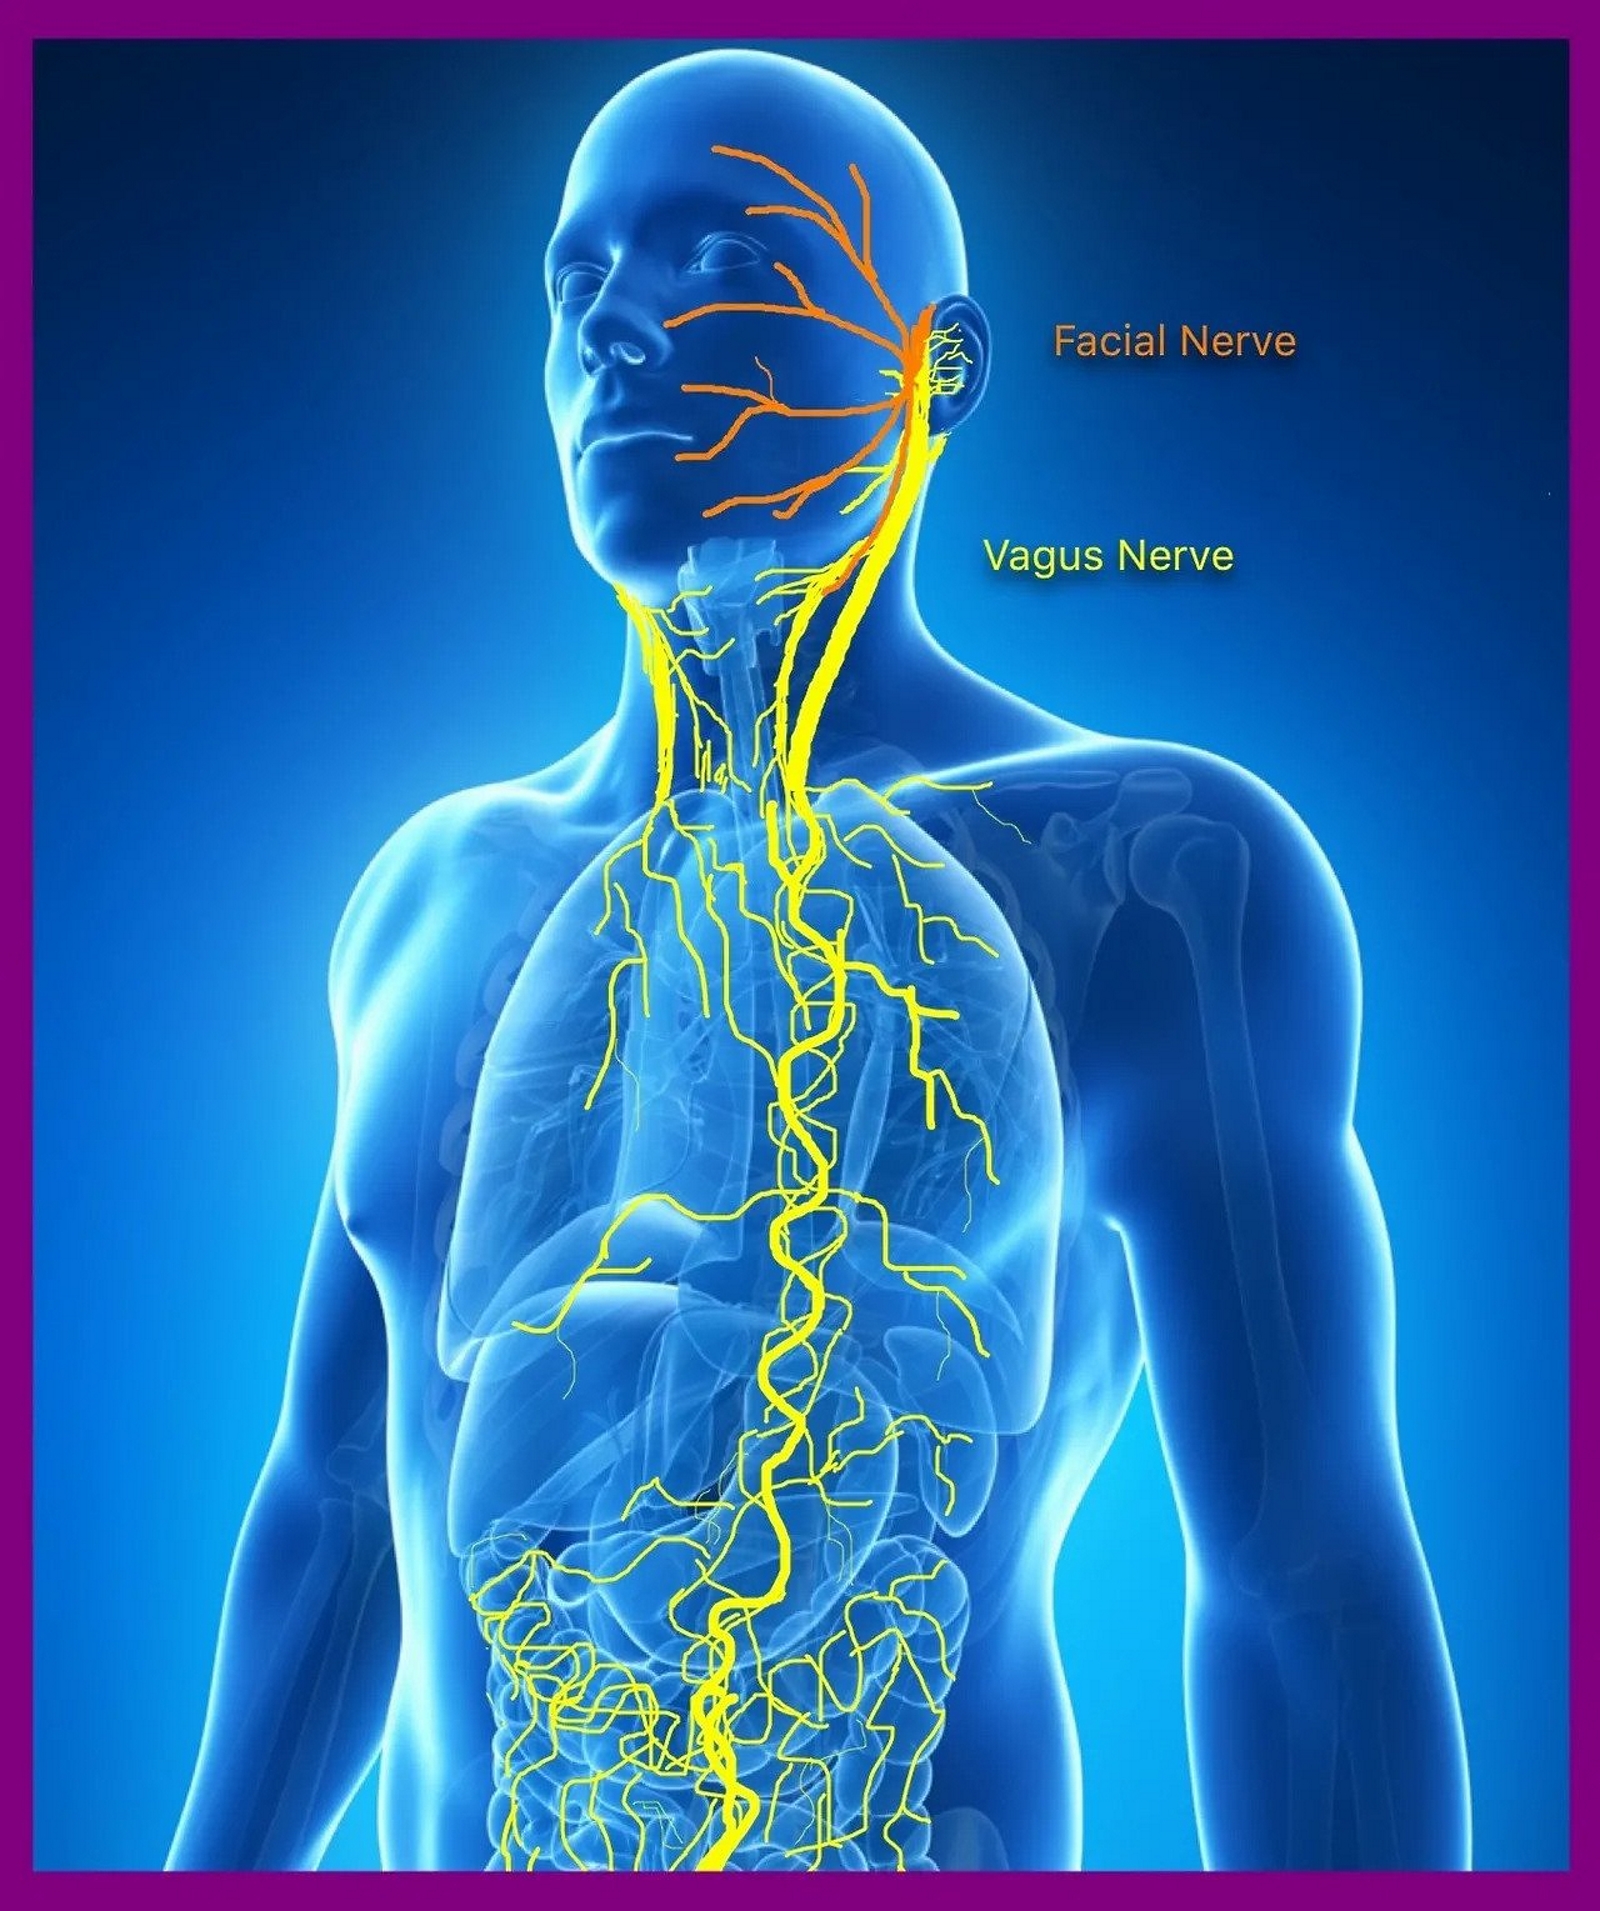 vagus nerve diagram